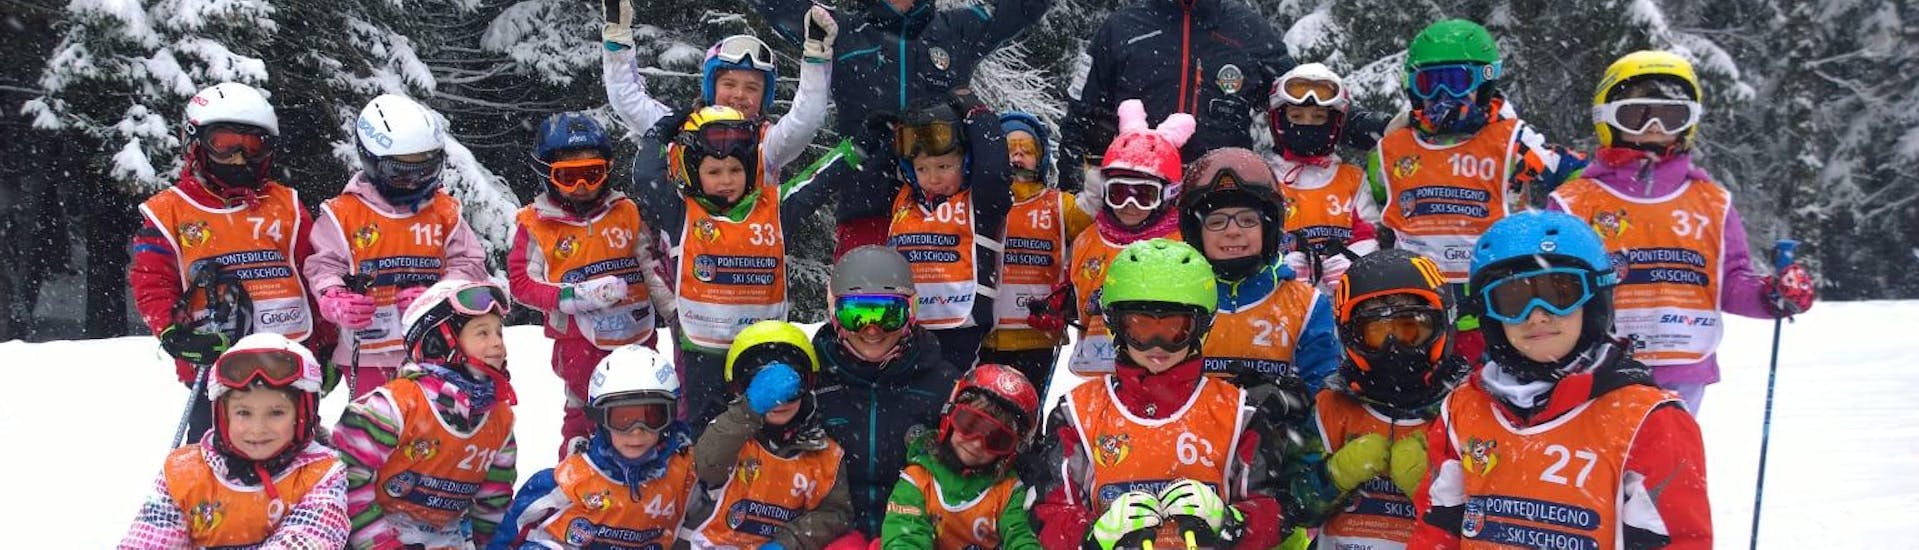 Een grote groep kinderen geniet van hun kinderskilessen bij de skischool van Pontedilegno.